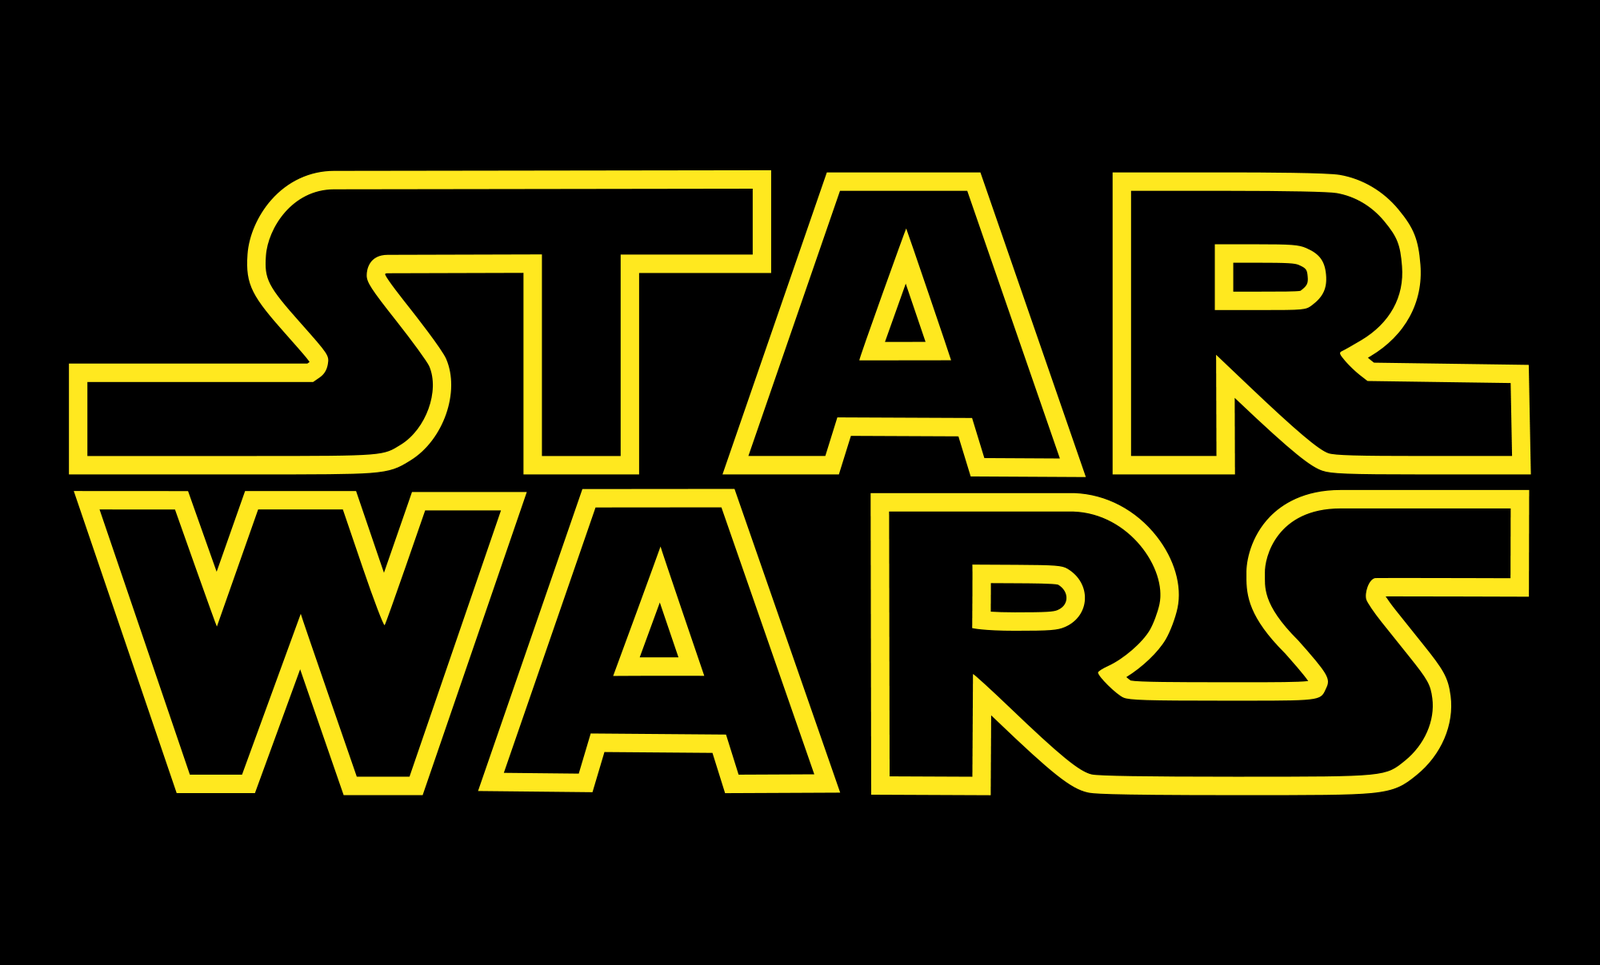 Star Wars reveals first gay couple - Star Wars, Jedi, Porgy, Gays, Walt disney company, Lucasfilm, news